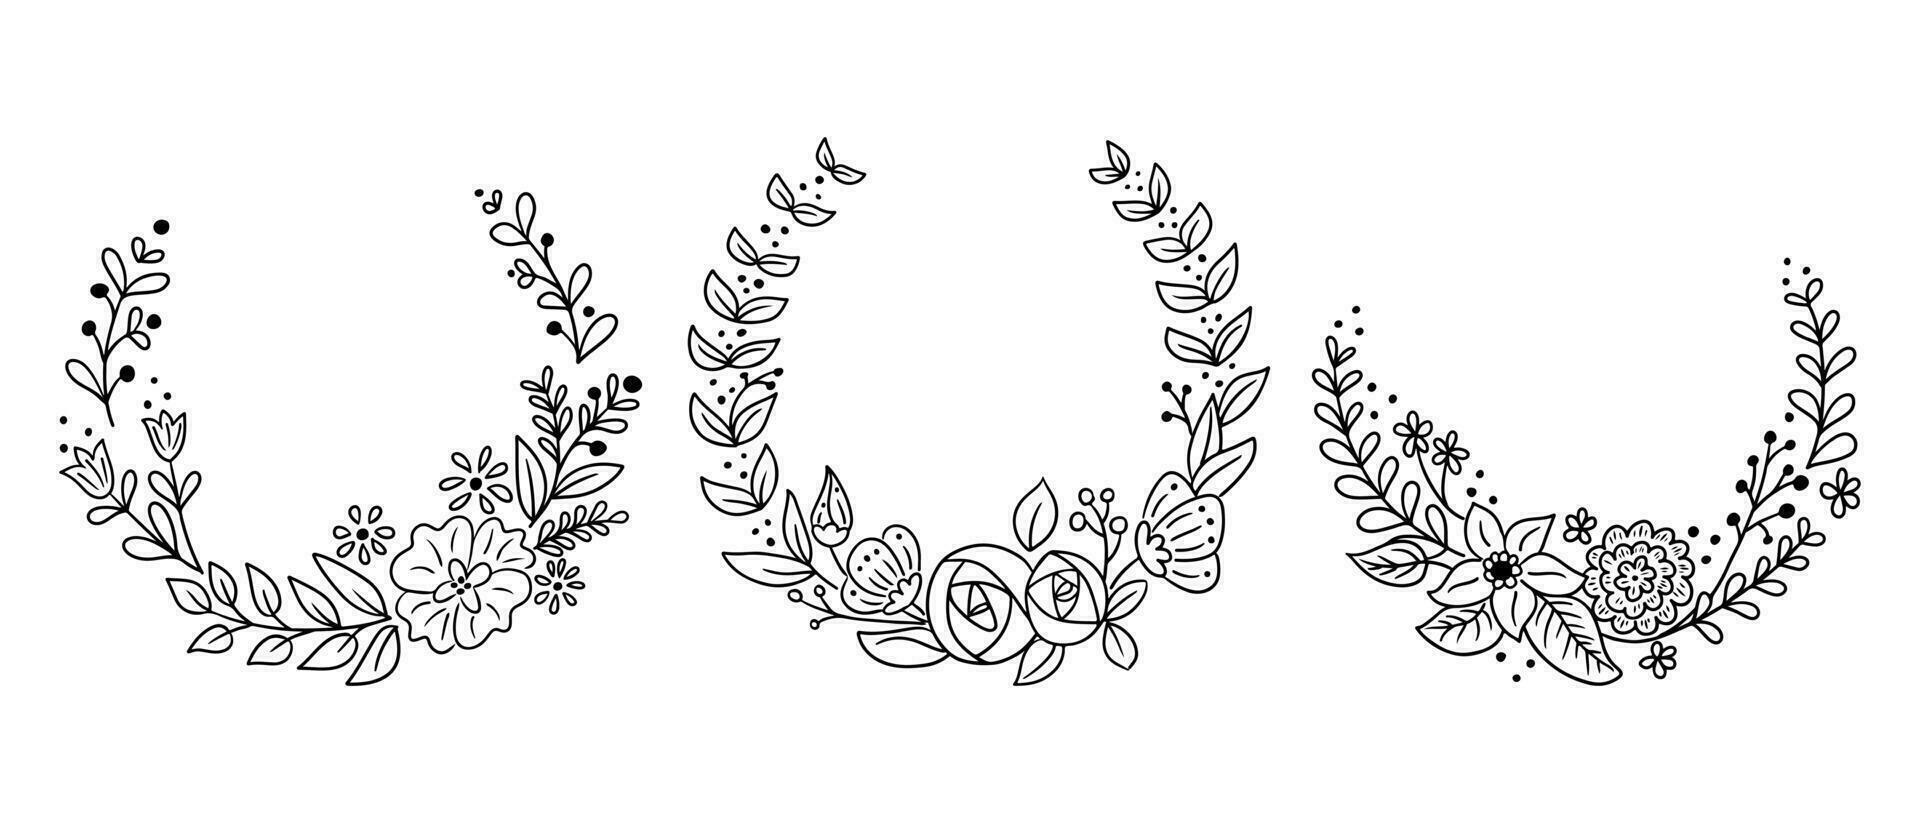 romántico conjunto de floral garabatear coronas o marcos vector contorno incompleto plantillas. negro contornos elementos con flores y hojas para para boda, aniversario tarjeta, invitación en blanco antecedentes